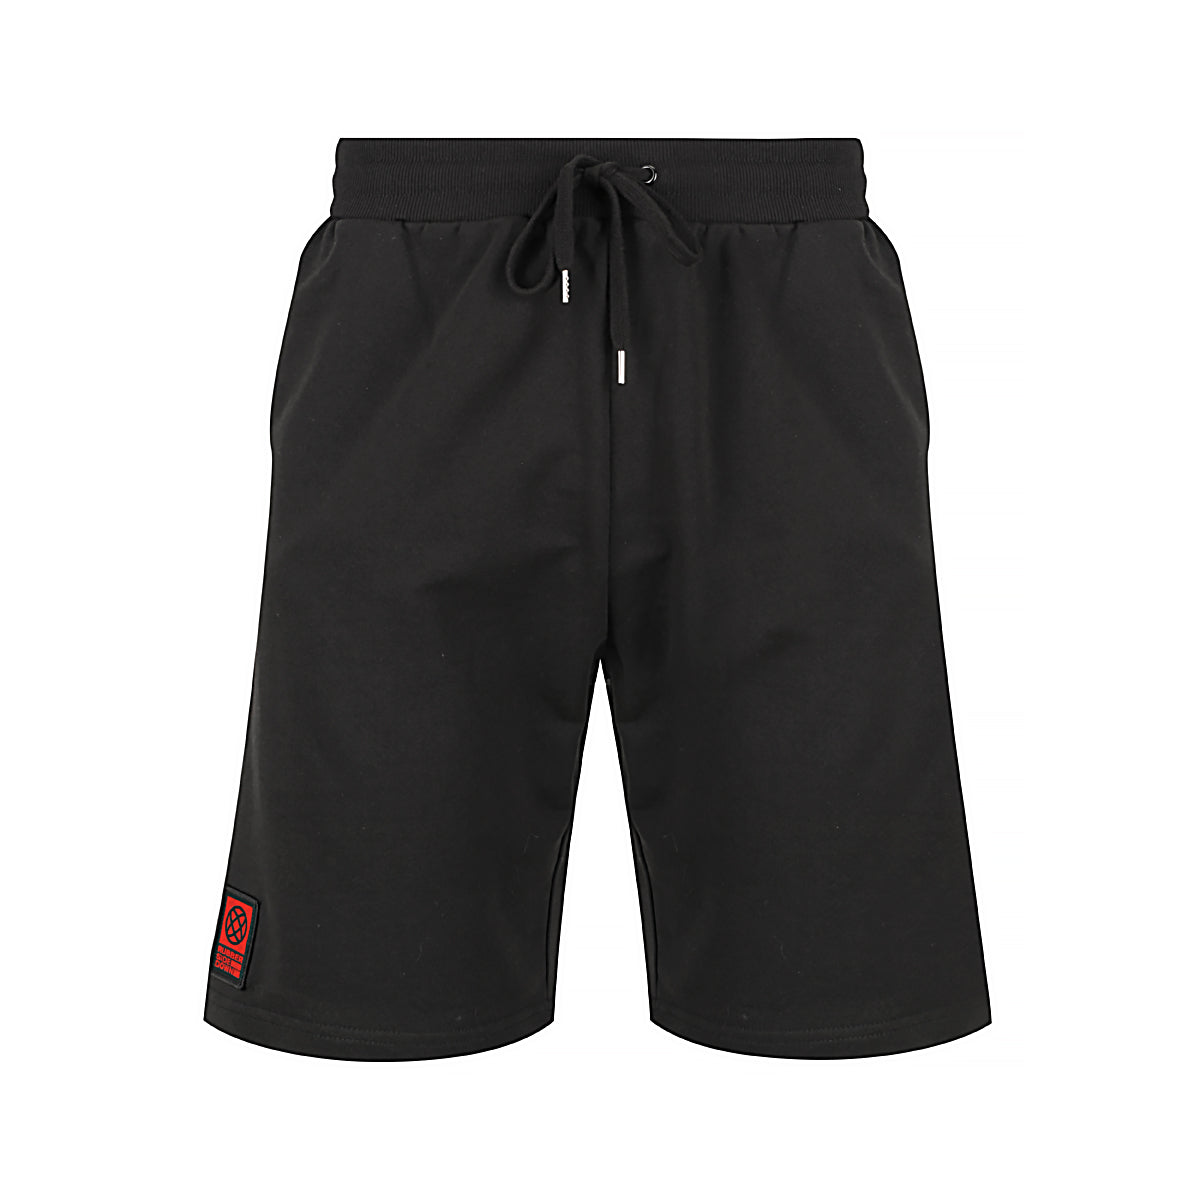 Drift Shorts - Redline Ltd Ed. – Rubber Side Down Global